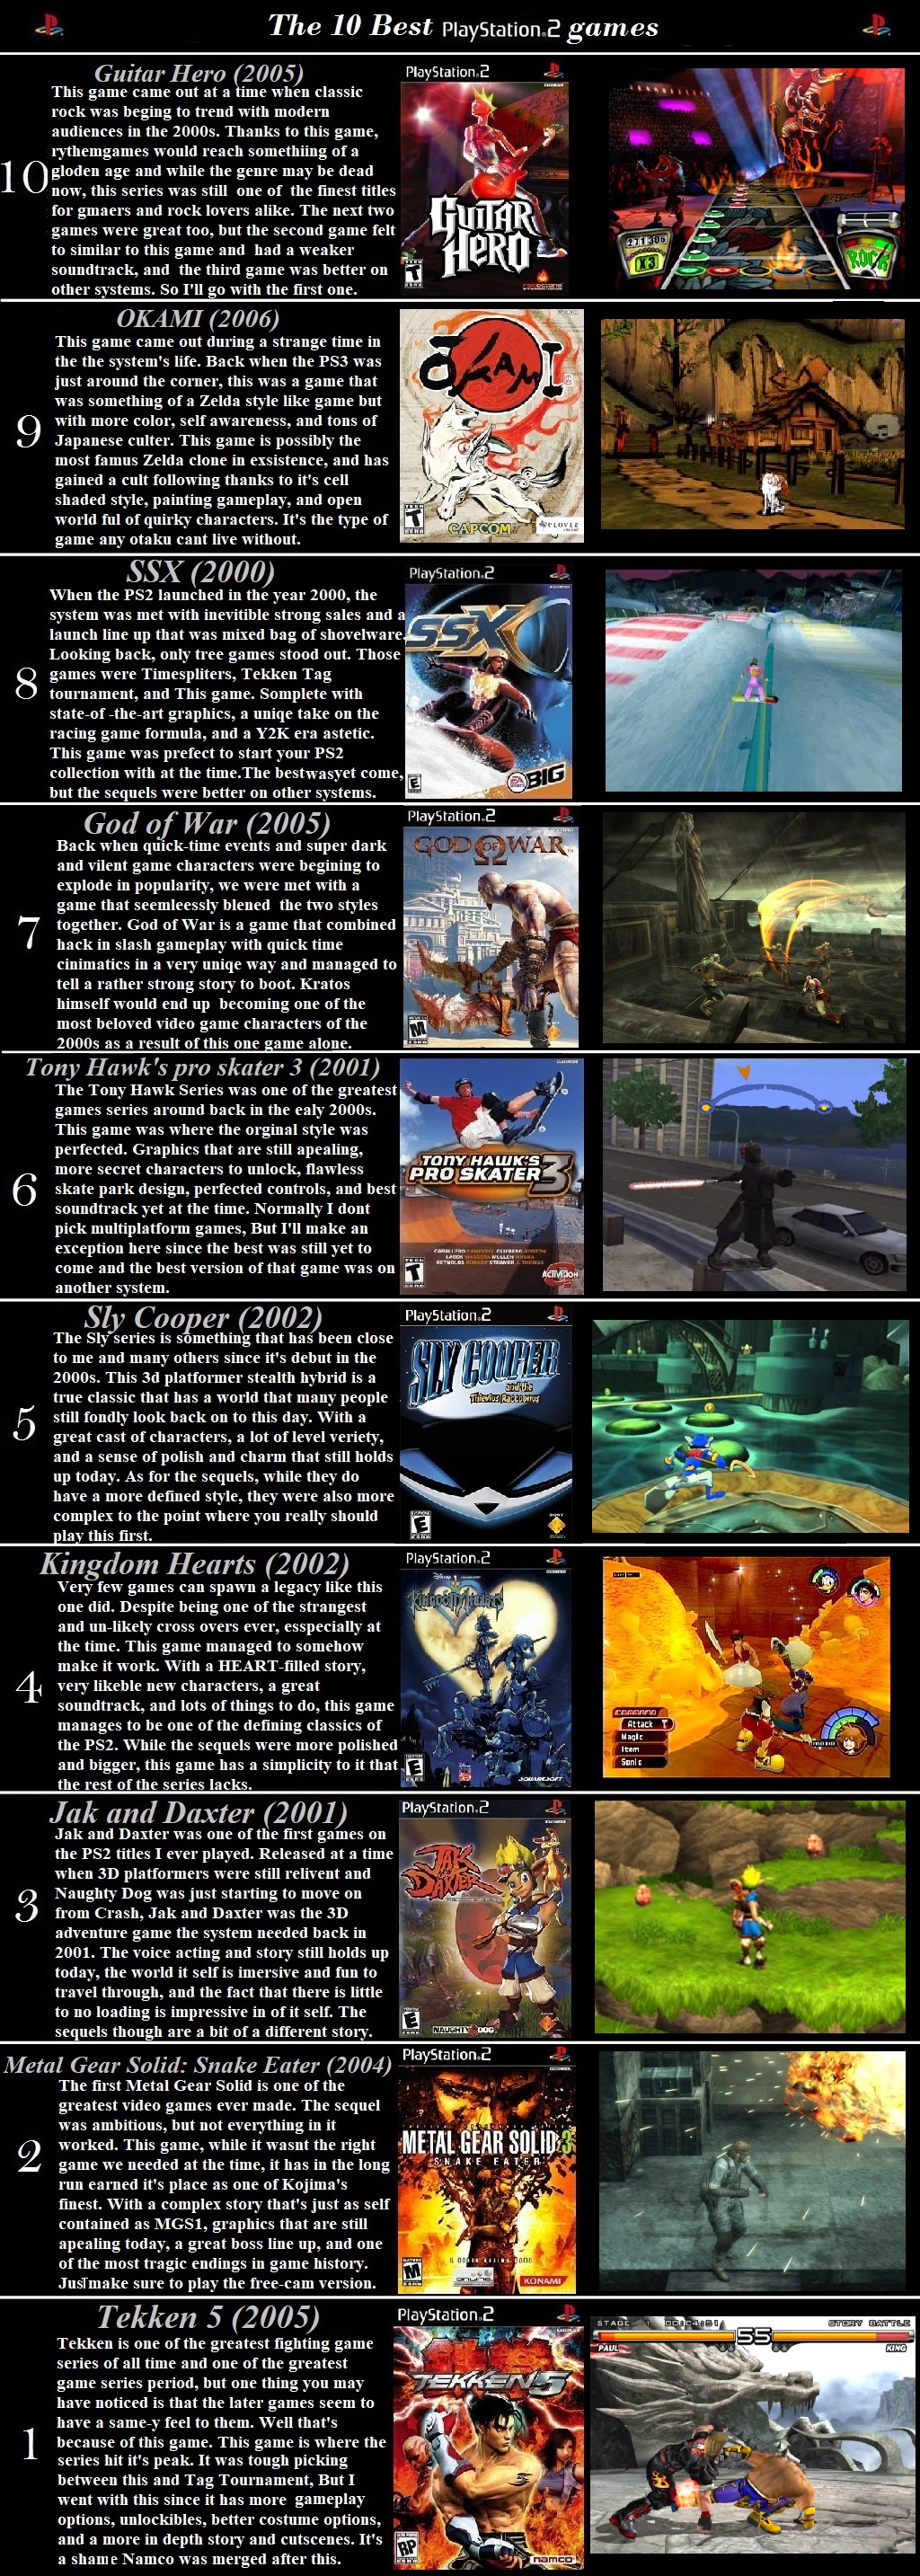 Os dez melhores games de PlayStation 2 de todos os tempos